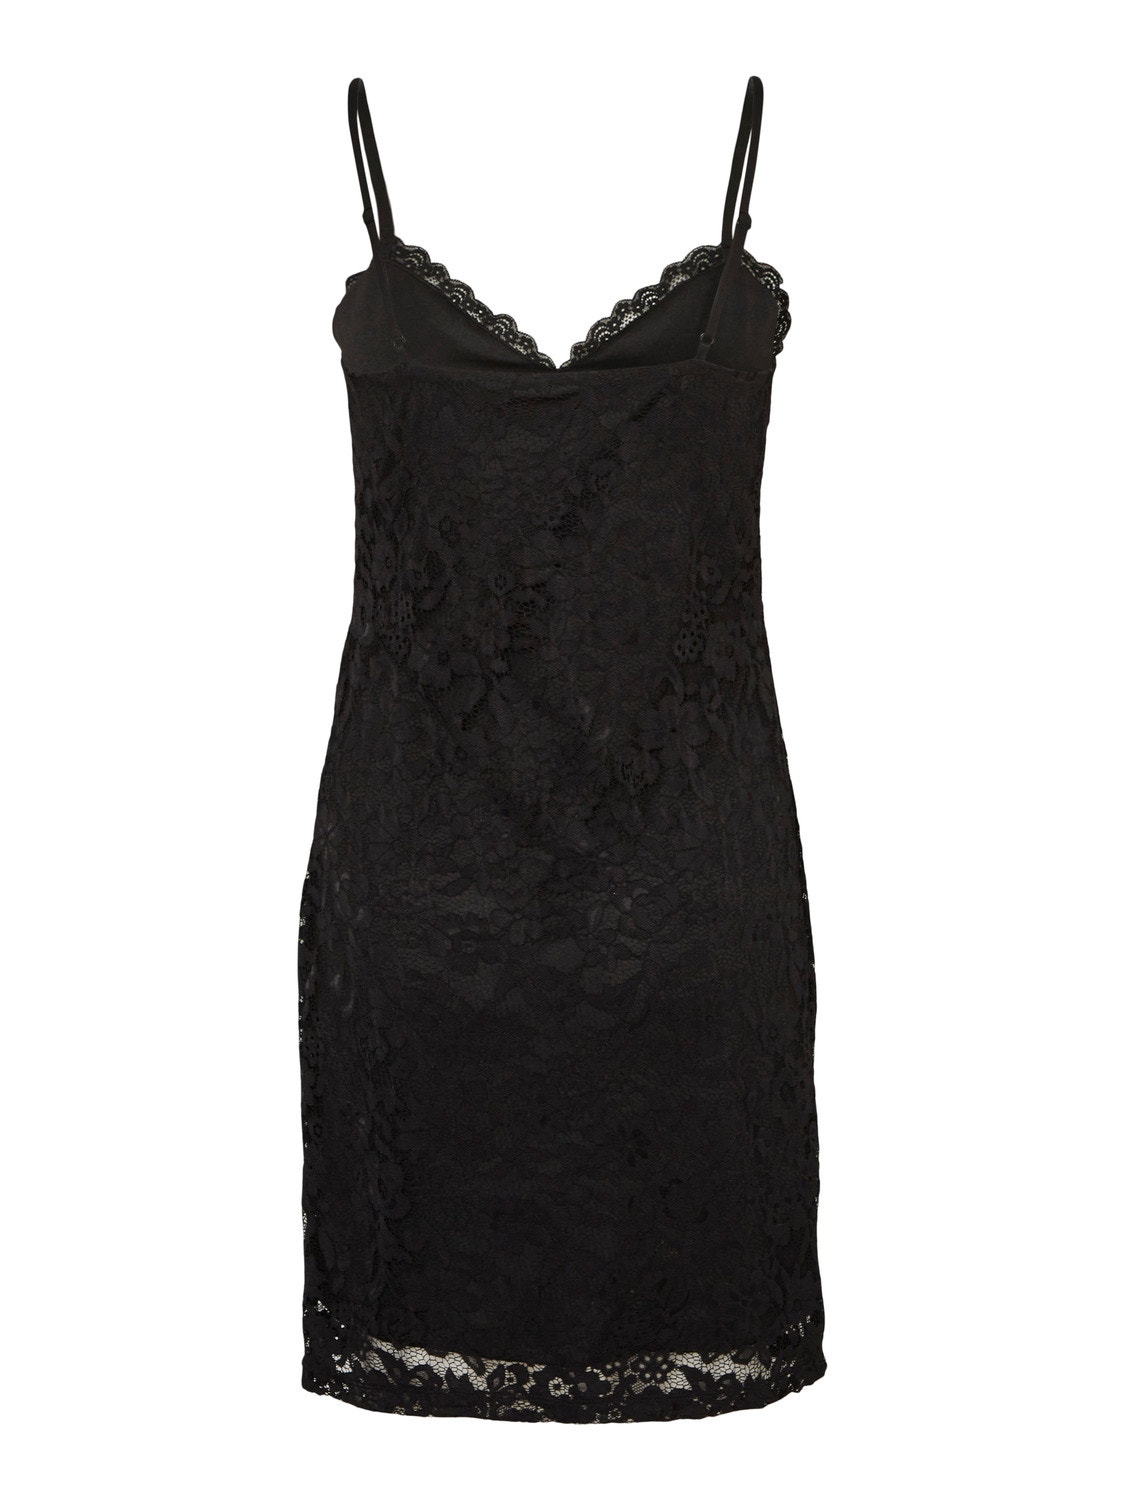 Vero Moda VMLOUISE Krótka sukienka -Black - 10288335